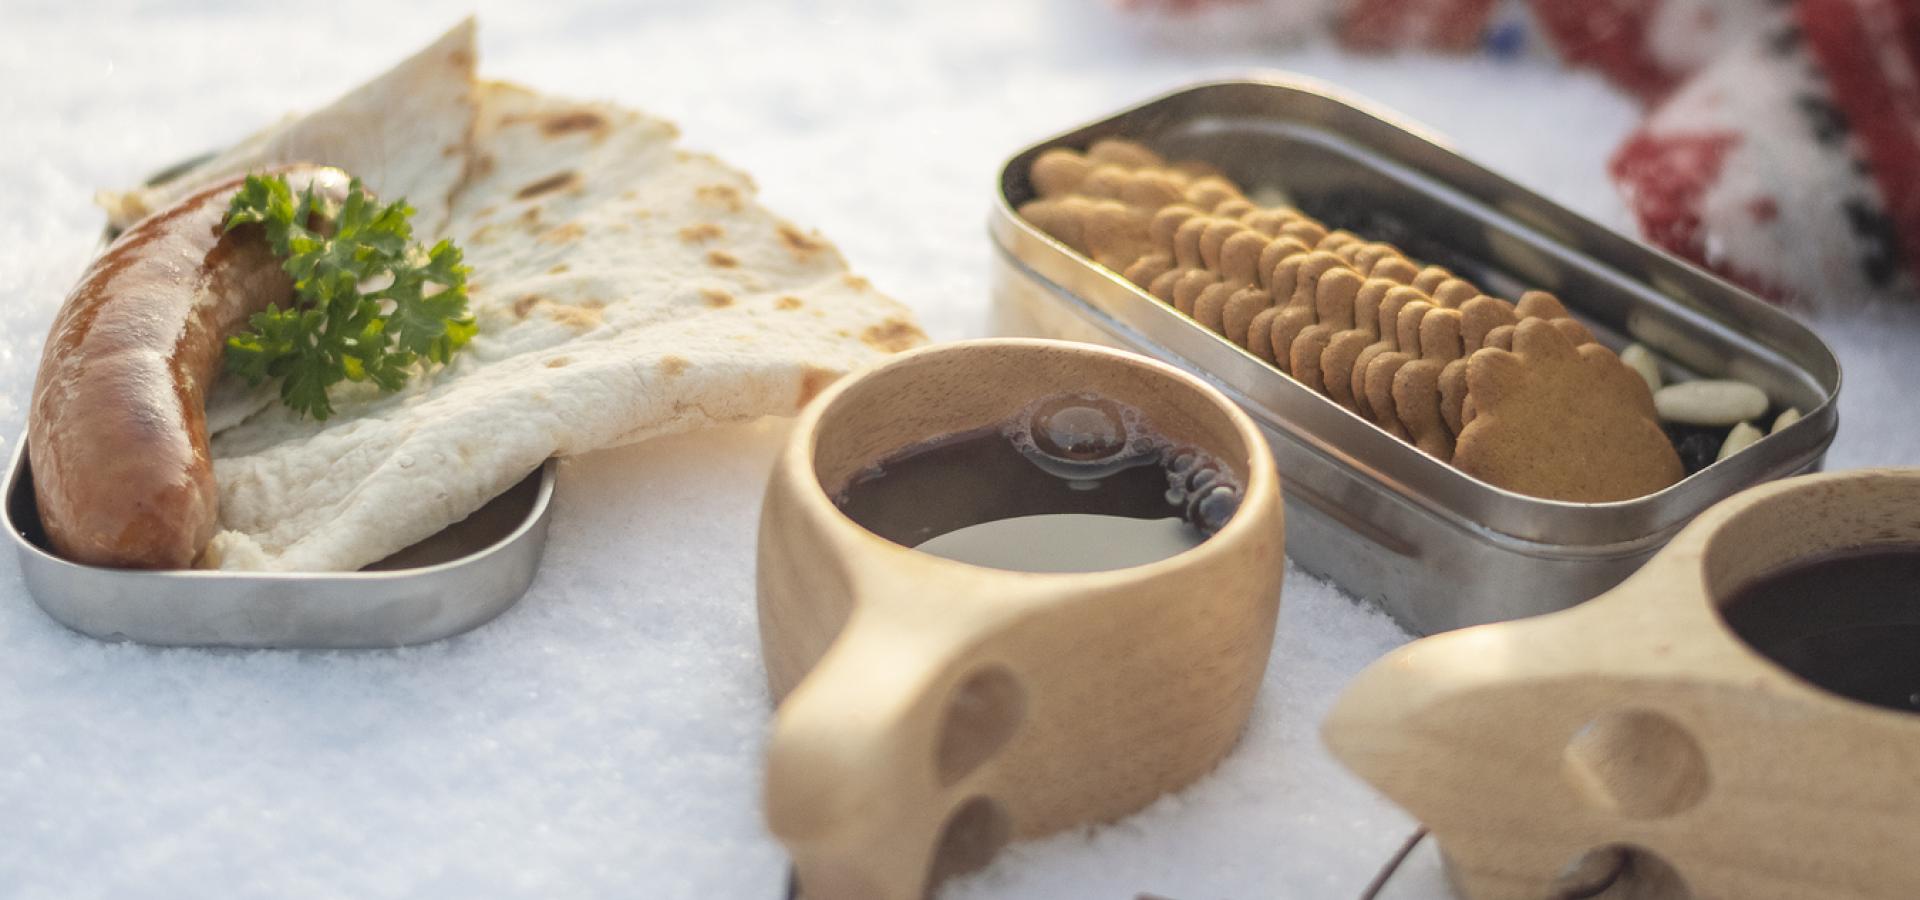 Uppdukad vinterpicknick med kaffe, pepparkakor, grillad korv och tunnbröd.